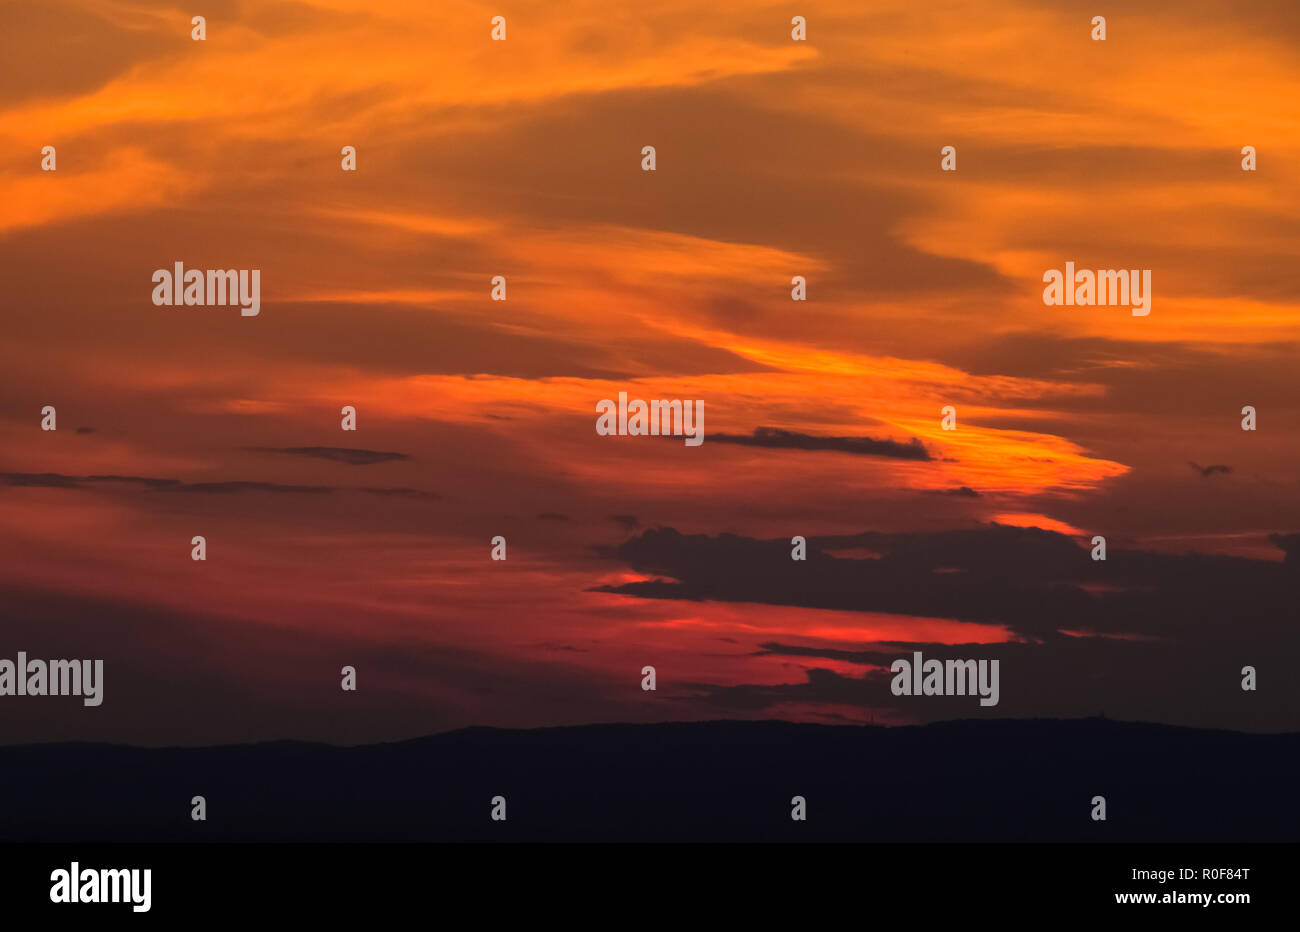 Abstrakte Sonnenuntergang Hintergrund mit vielen Schattierungen von Rot und Orange sieht aus wie Feuer in den Himmel. Stockfoto